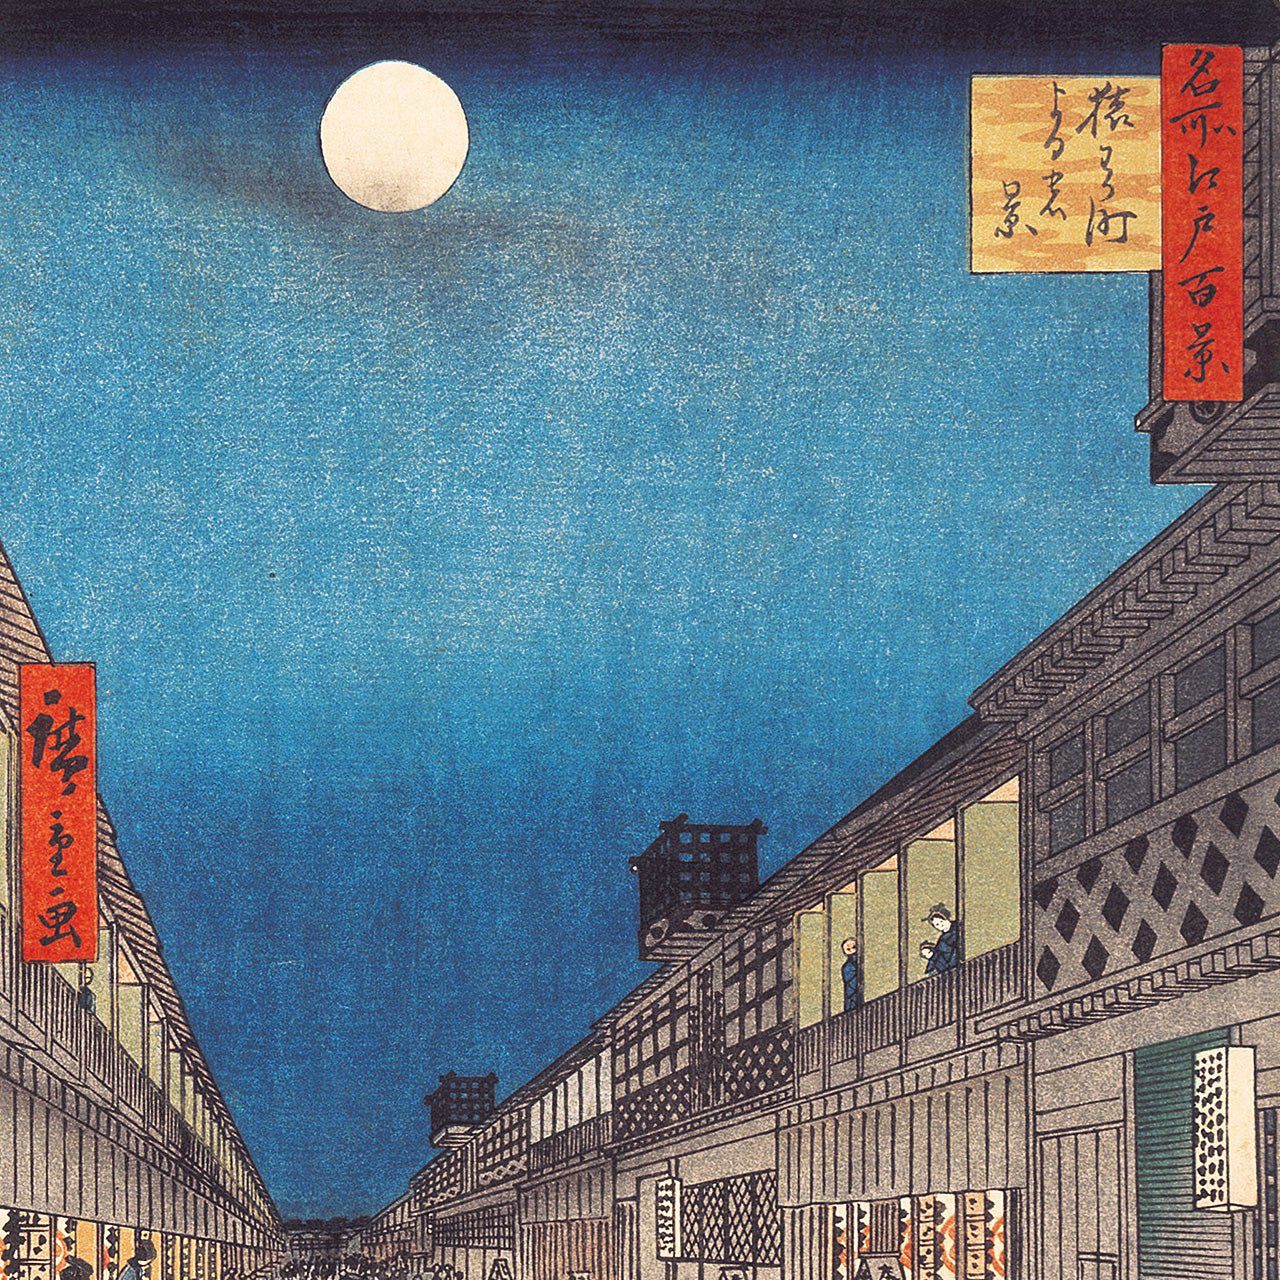 Night View of Saruwaka-machi - Japonica Graphic